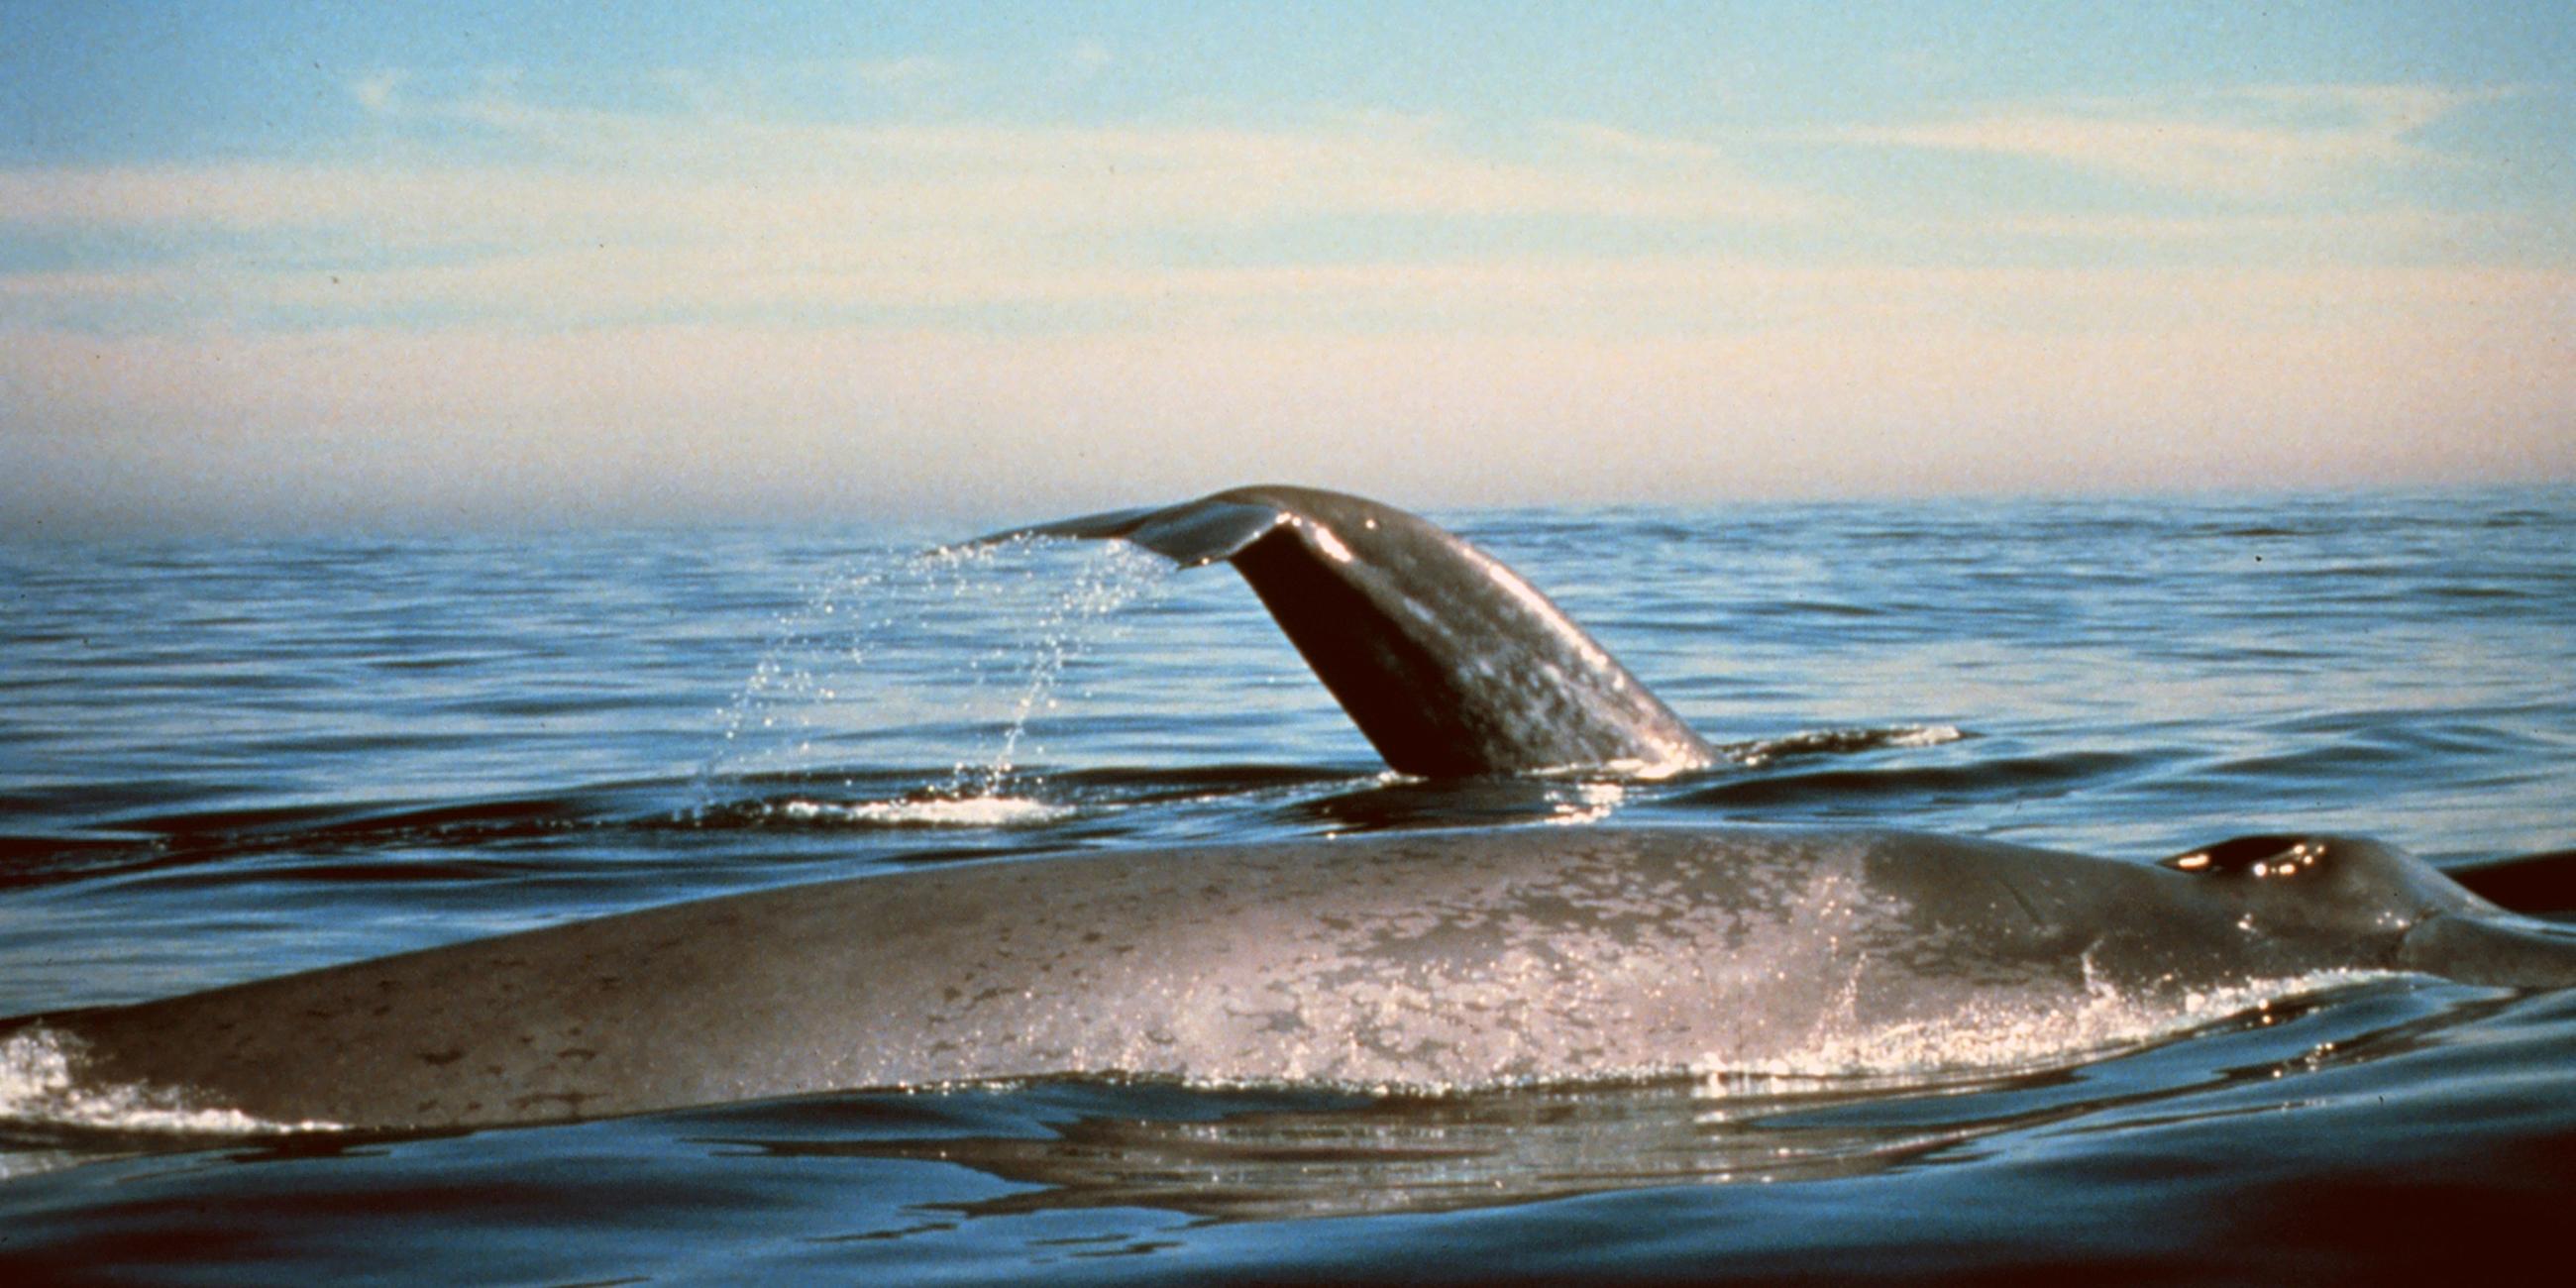 Blauwale vor der kalifornischen Küste (Archivbild)